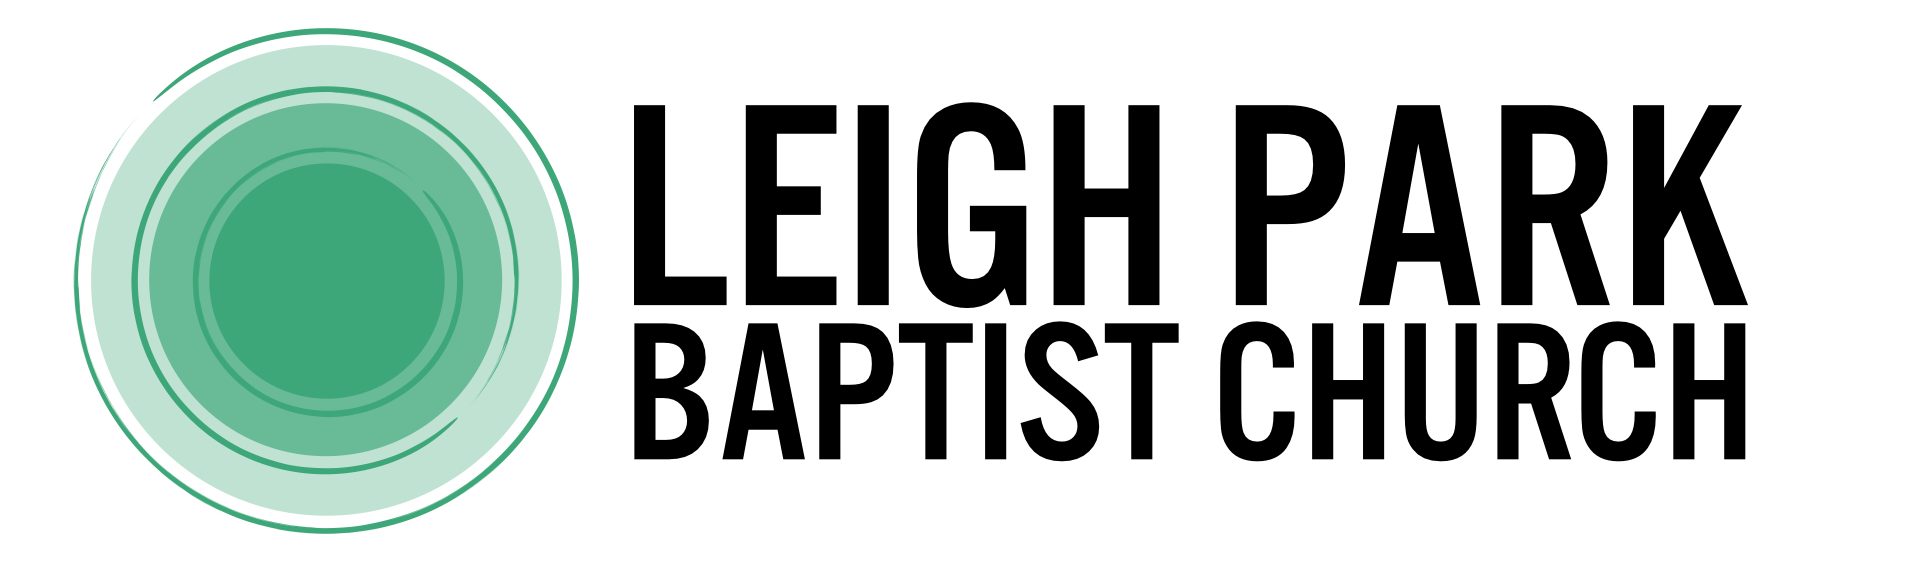 Leigh Park Baptist Church